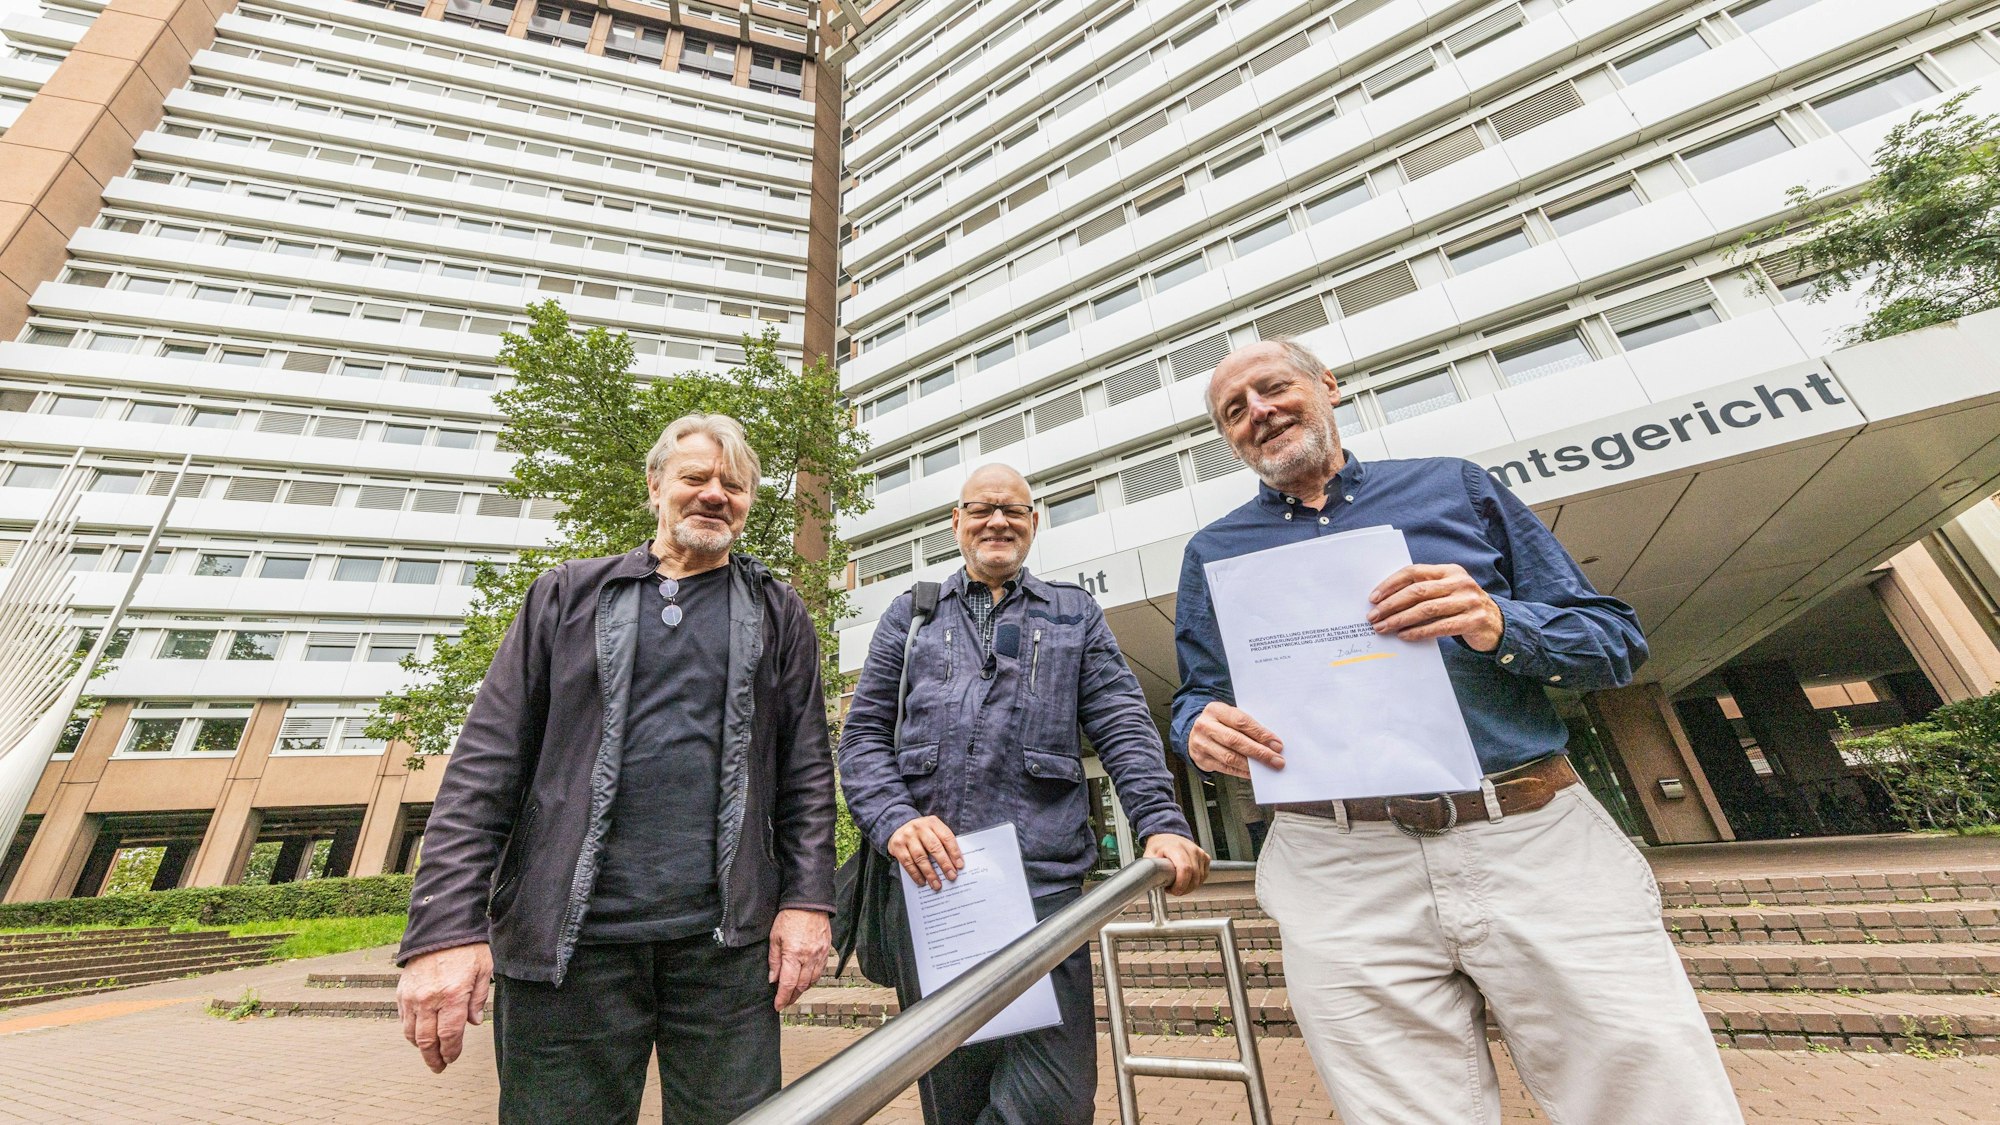 Vor dem Justizzentrum (von links): Profesor Thomas Scheidler, Jörg Frank und Helmut Röscheisen.